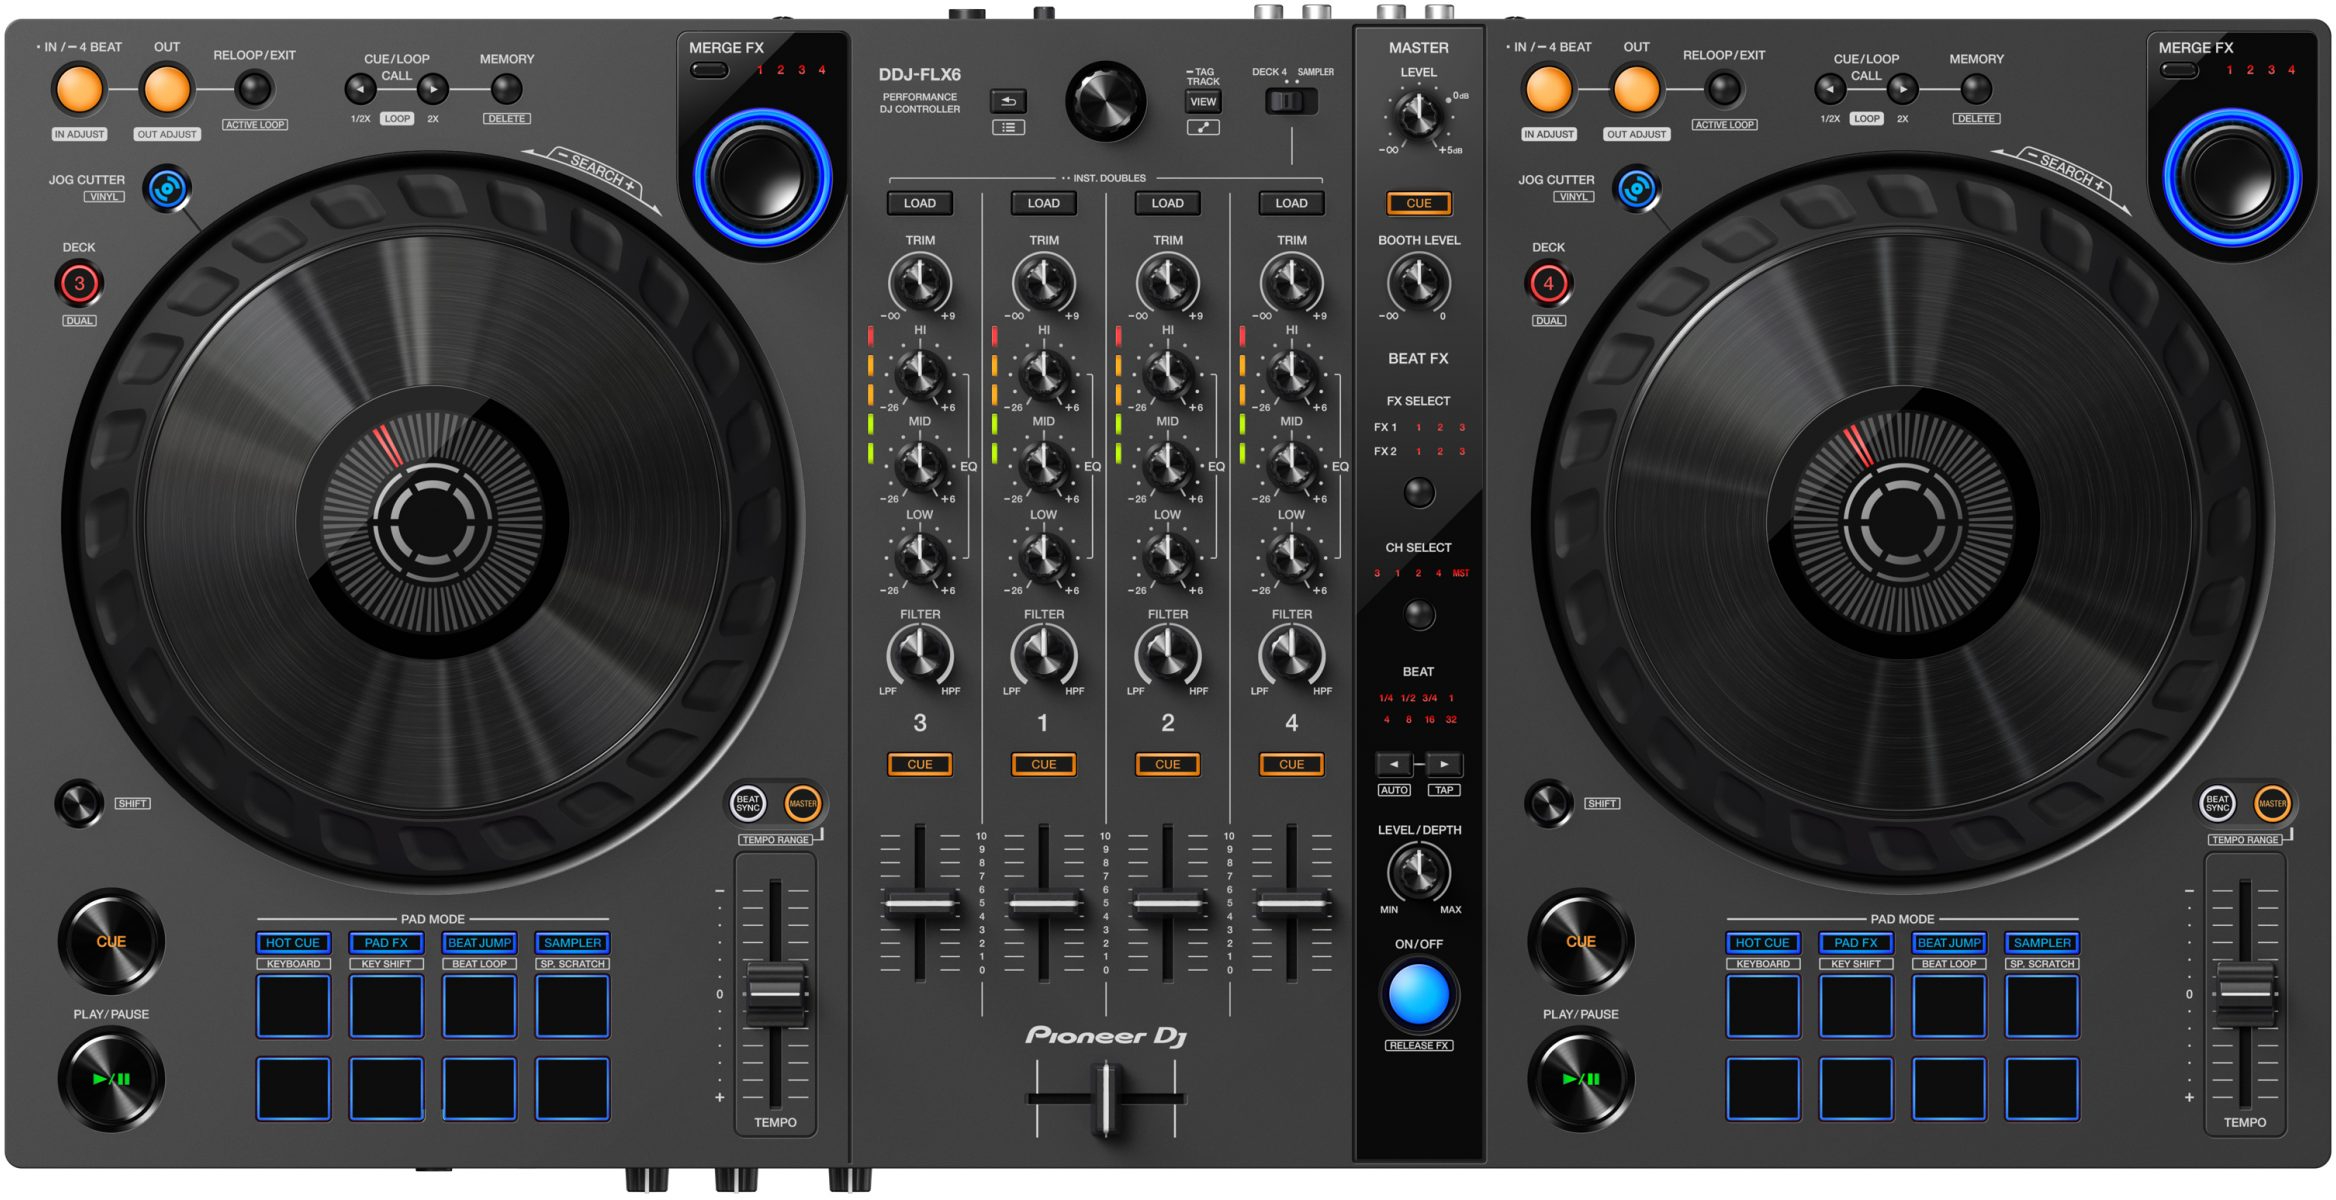 Pioneer Dj Ddj-flx6-gt - USB DJ-Controller - Main picture